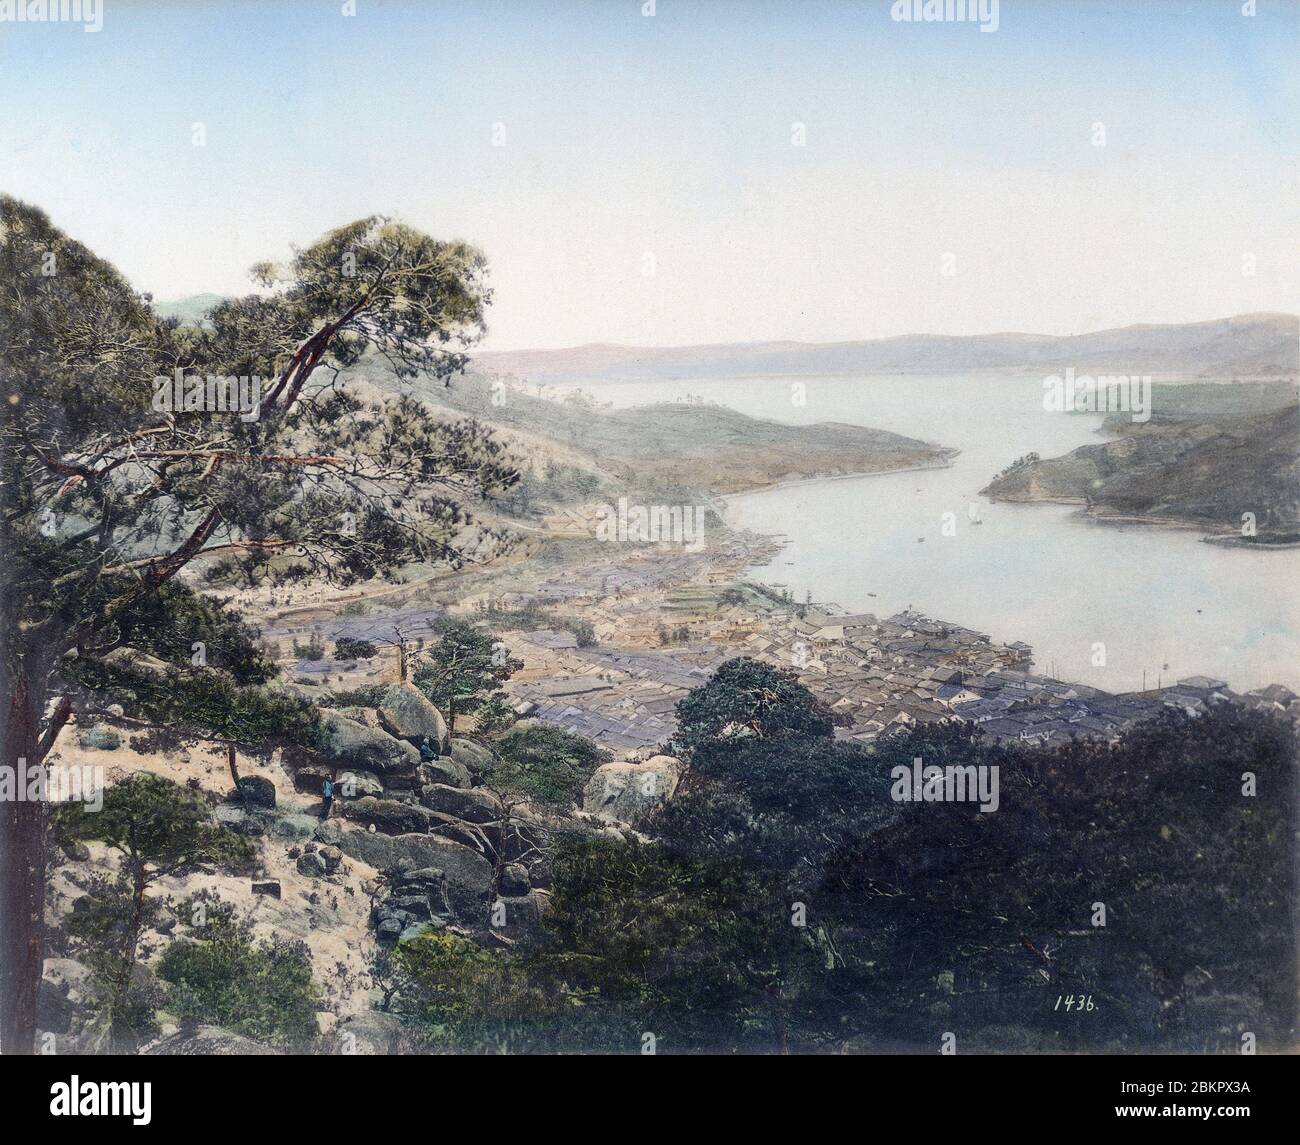 [ 1890er Jahre Japan - Blick auf Onomichi ] - Panoramablick auf Onomichi und das Seto Binnenmeer in der Präfektur Hiroshima. Die Stadt war ein wichtiger Hafen für den Transport von Gütern. Vintage Albumin-Fotografie aus dem 19. Jahrhundert. Stockfoto